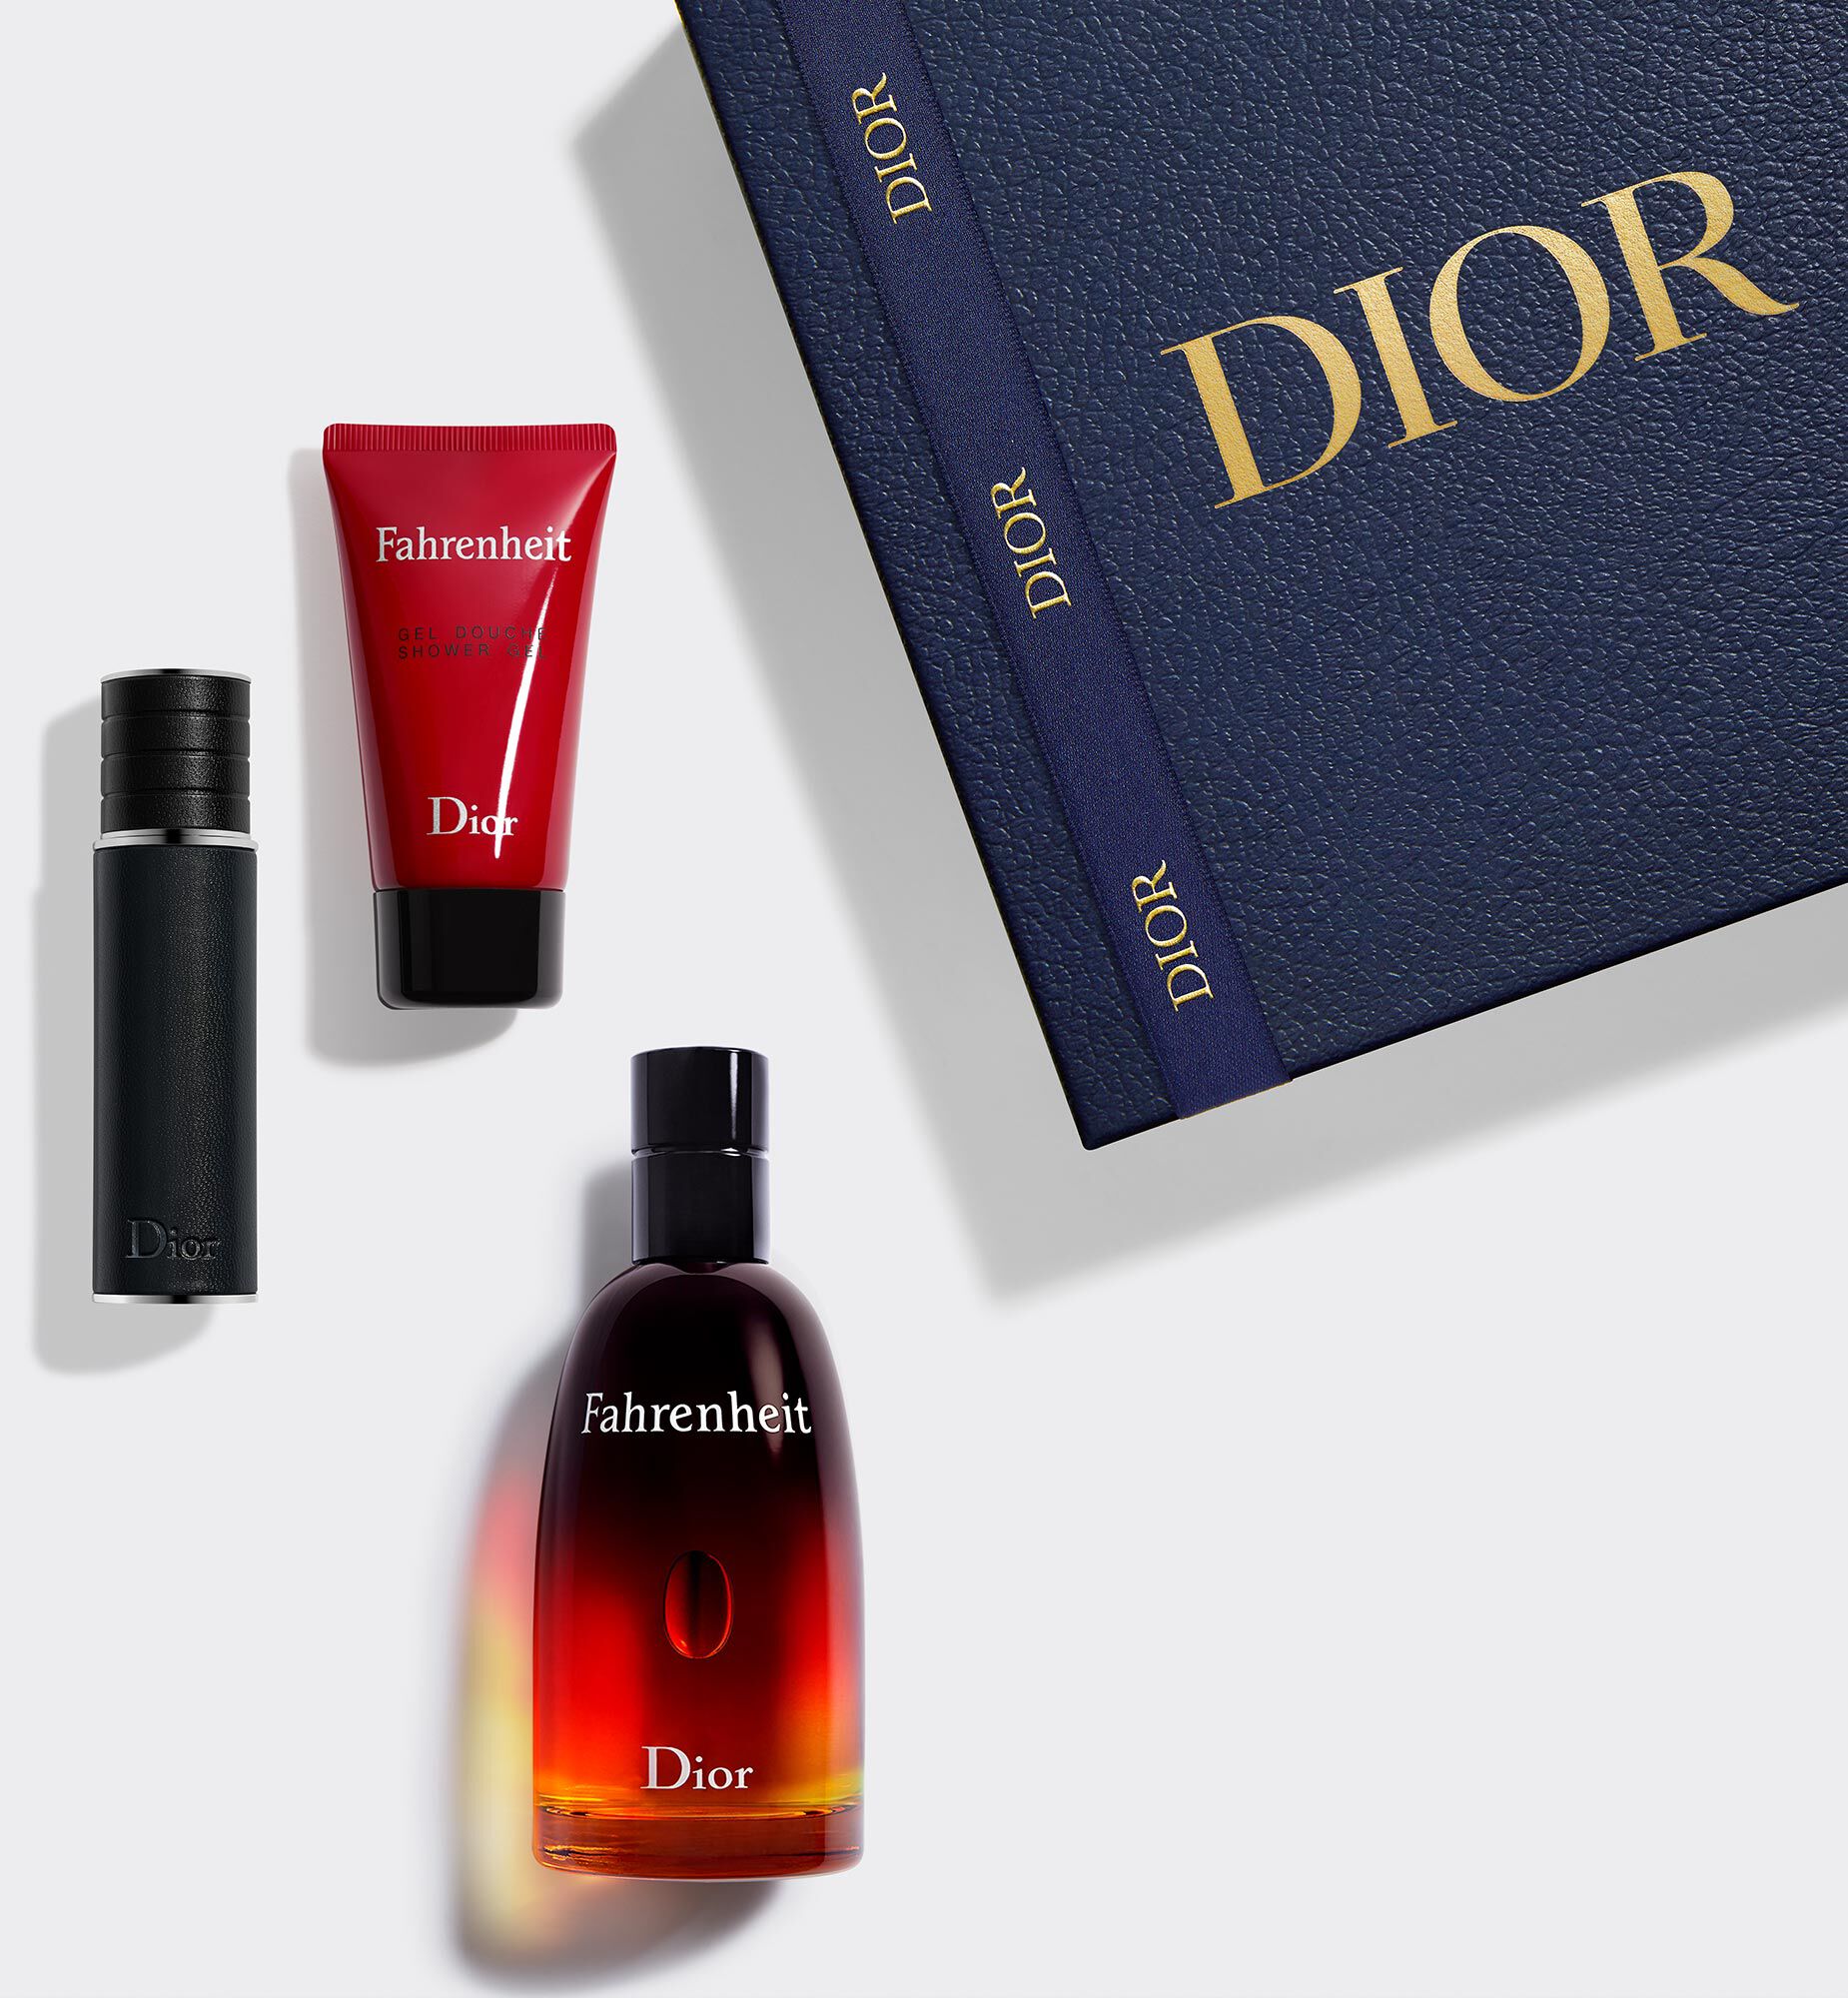 Nước Hoa Christian Dior Fahrenheit Chính Hãng Xách Tay Mỹ Cao Cấp HCM